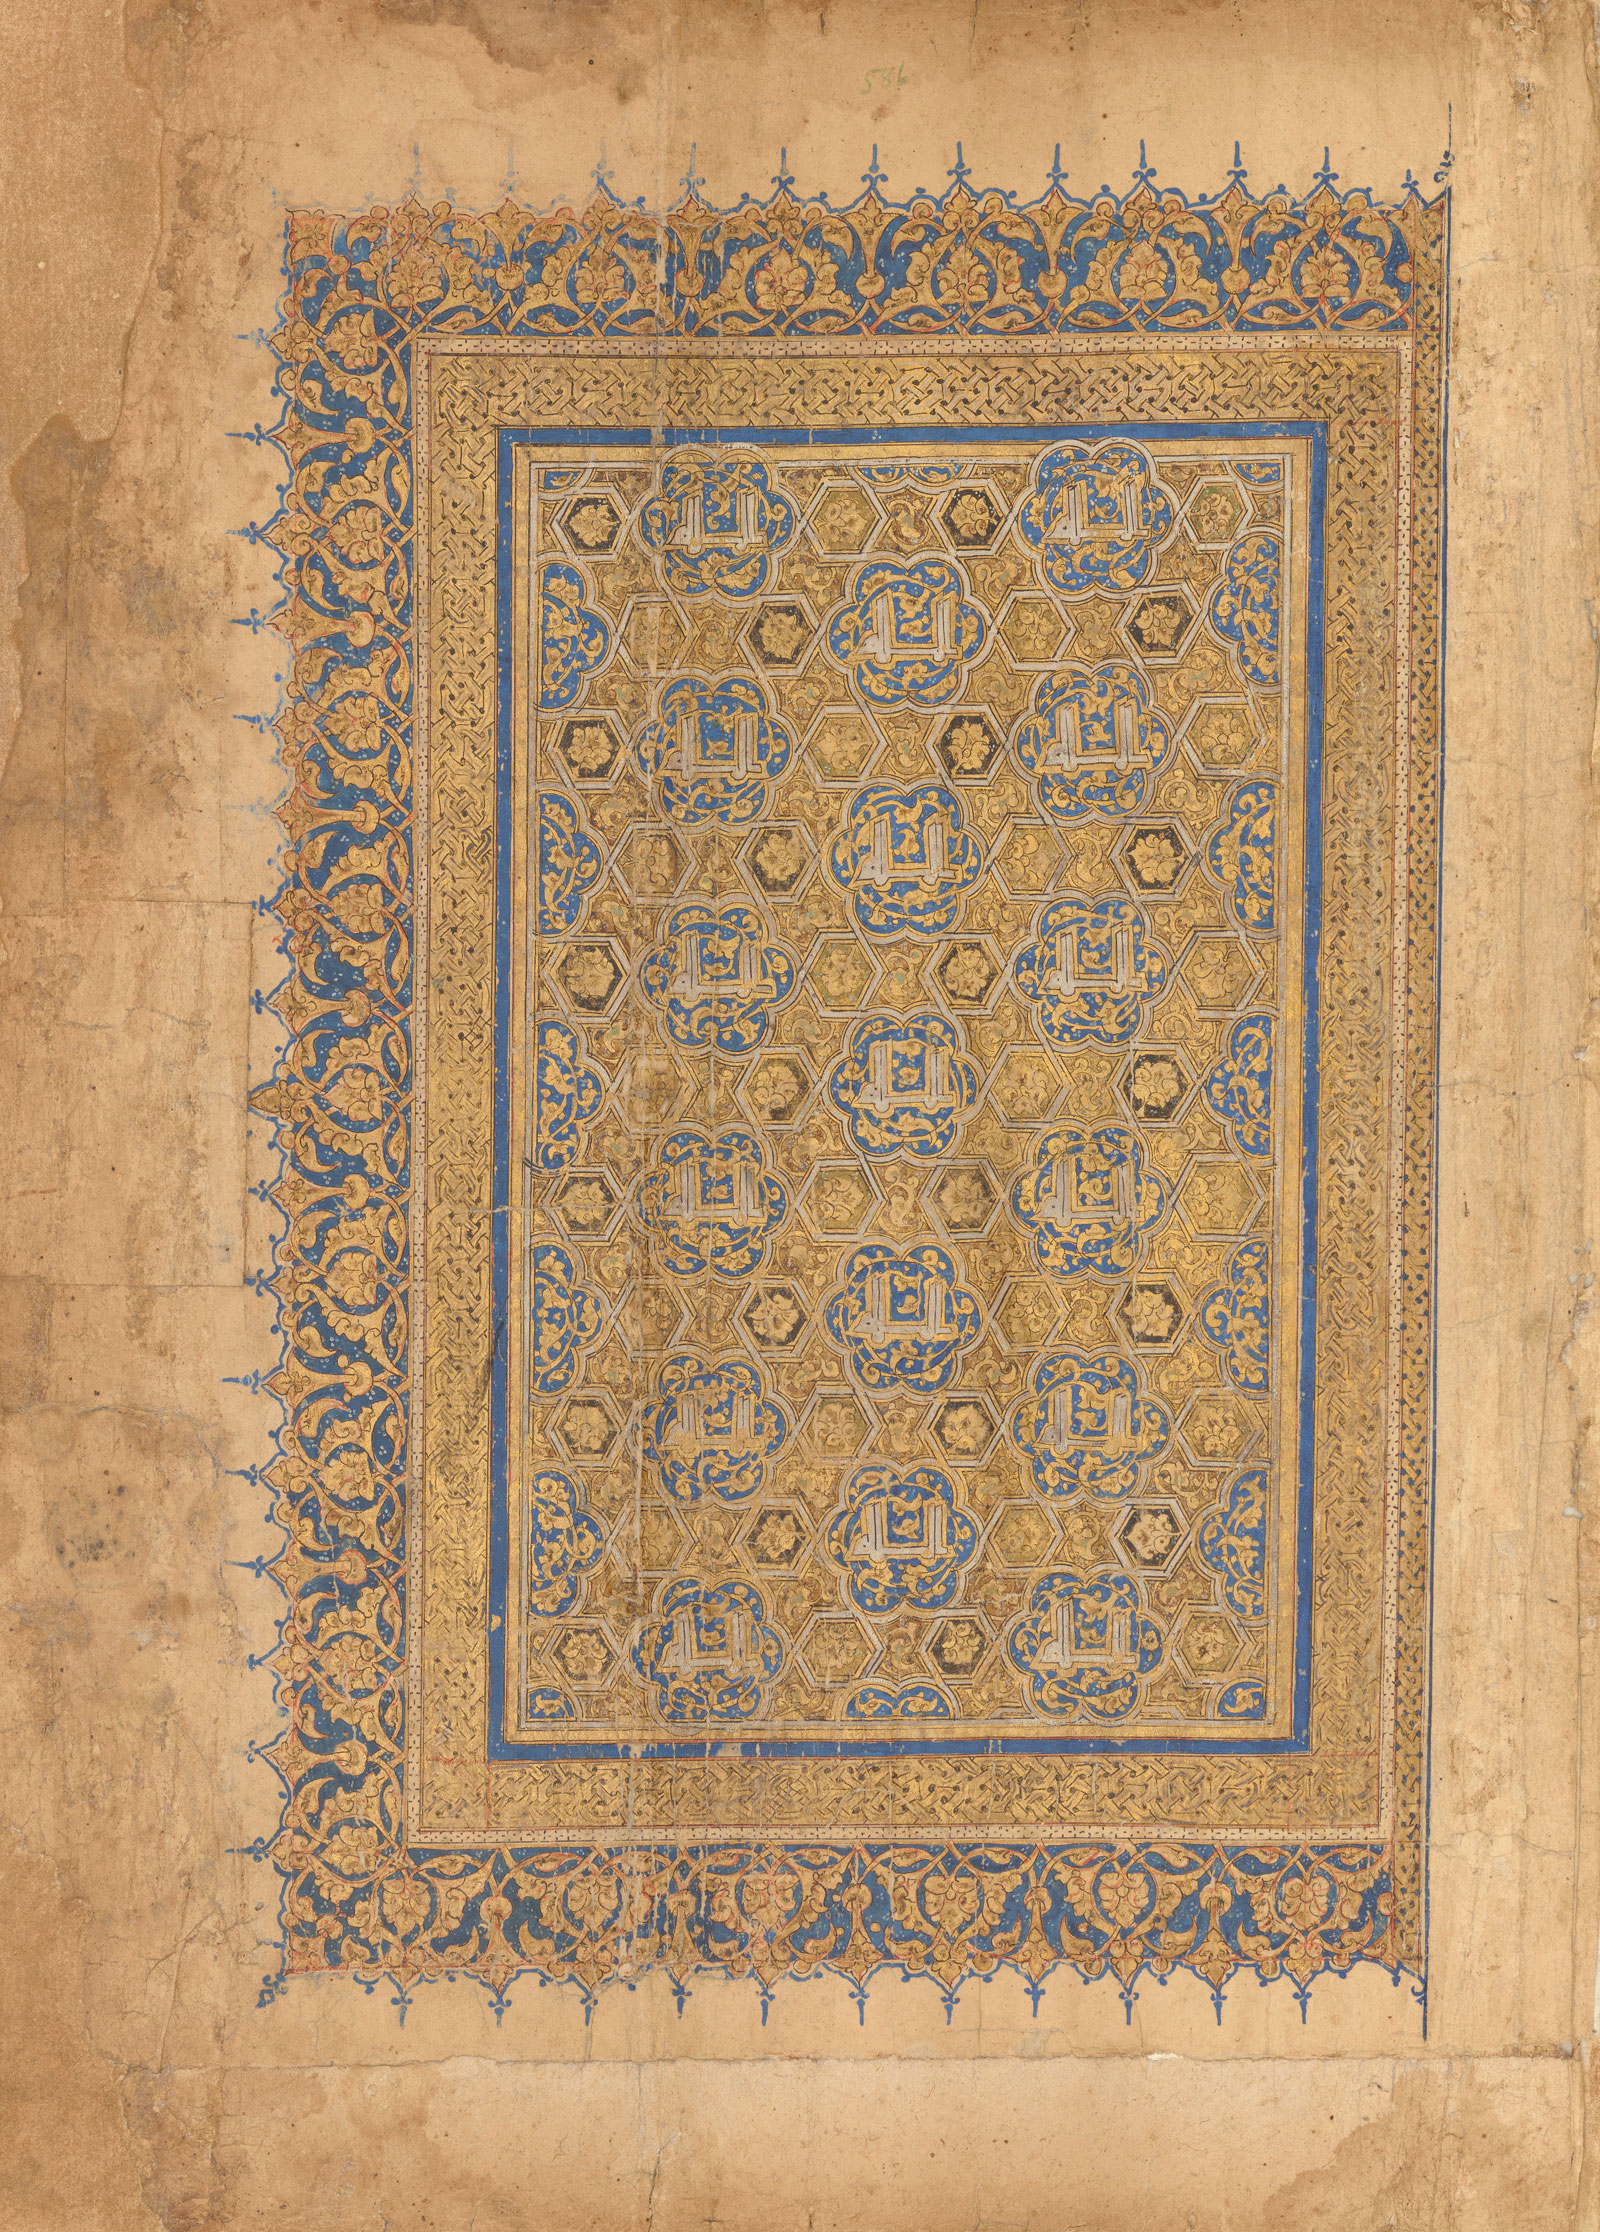 Koran copied by Al-Husayn ibn Muhammad al-Husayni, possibly Mosul, Iraq, Il-Khanid period, 1303